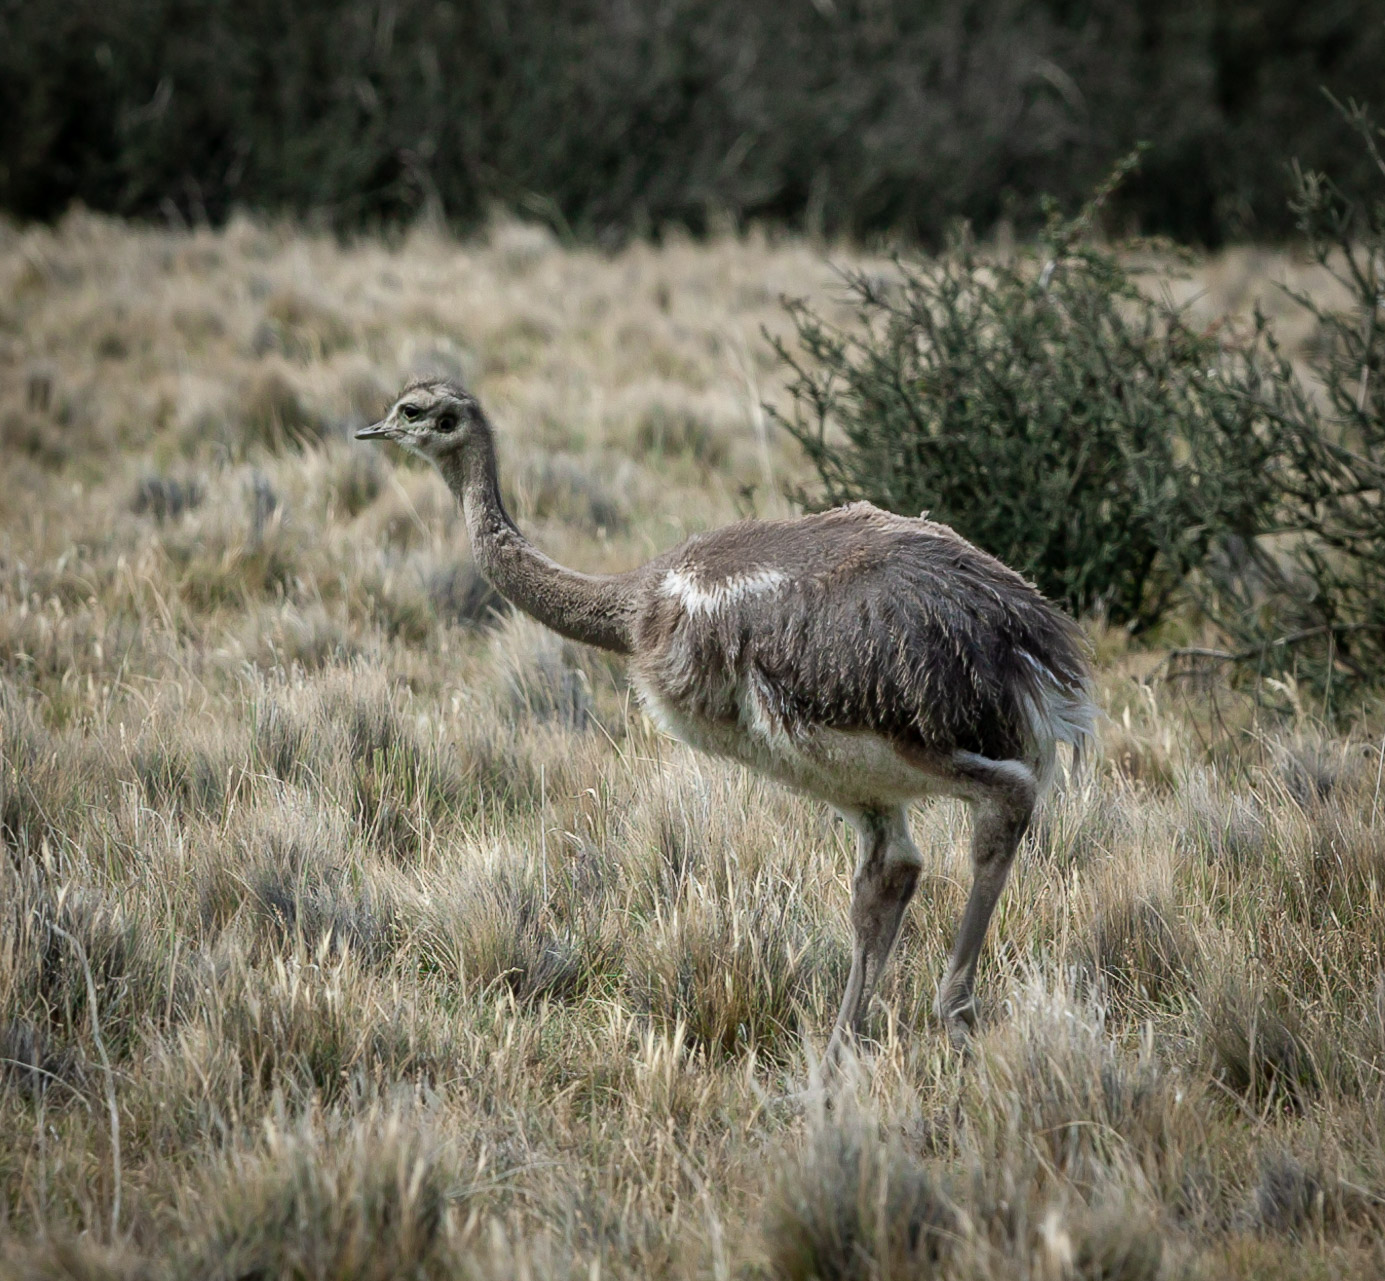 Chilean Rhea or ñandús (ostrich family)